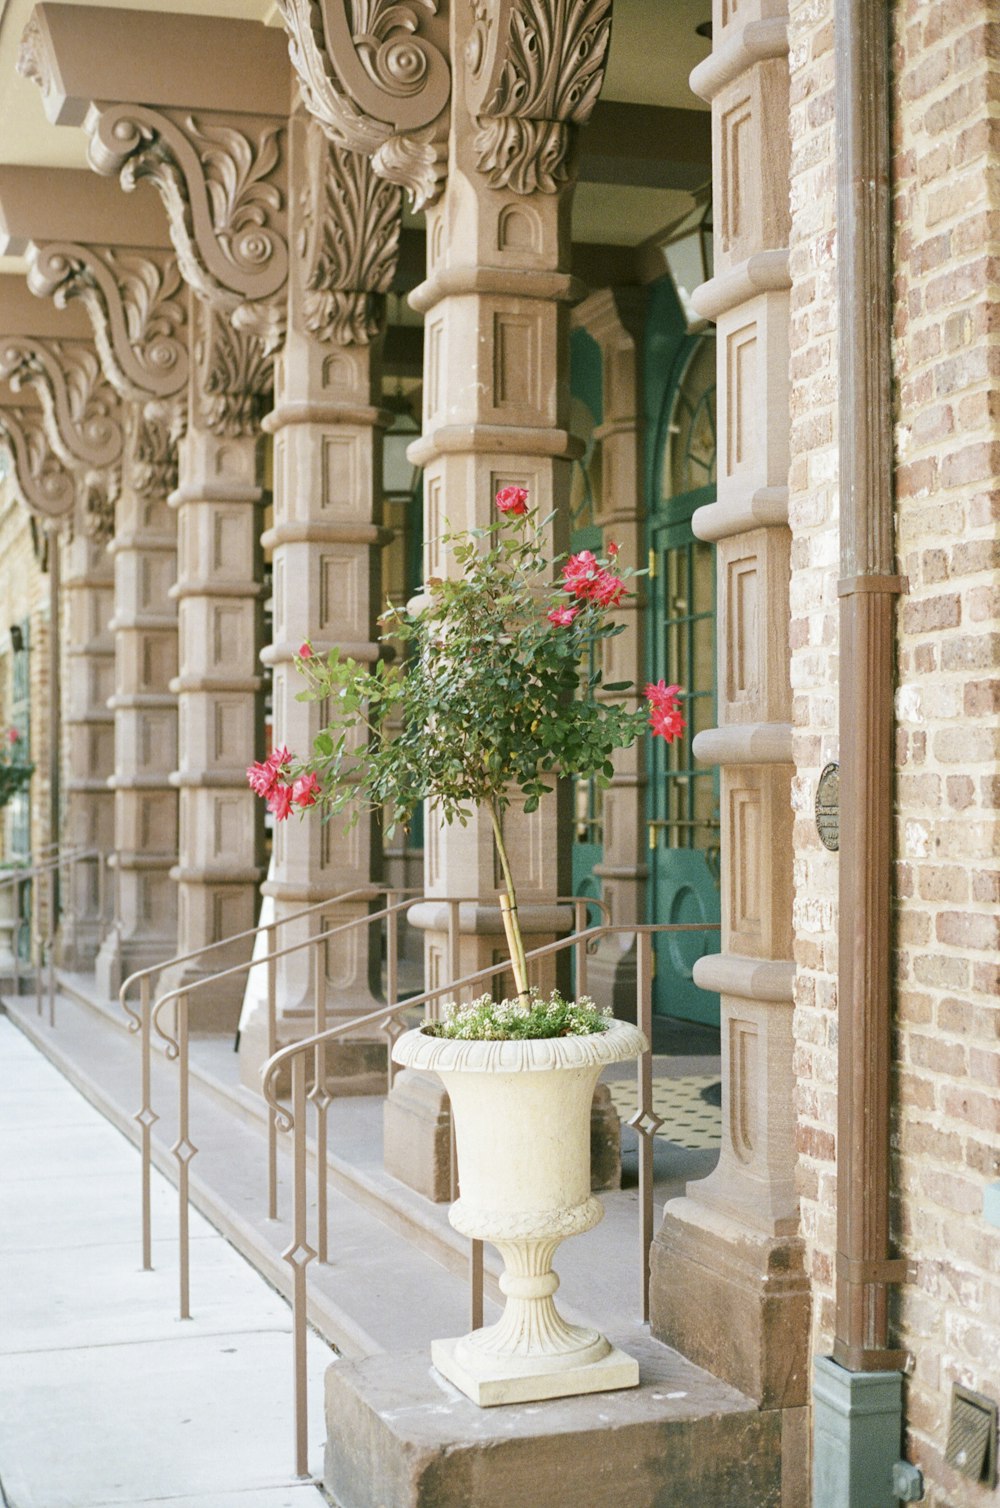 flores vermelhas no vaso de cerâmica branco na escada de concreto branca